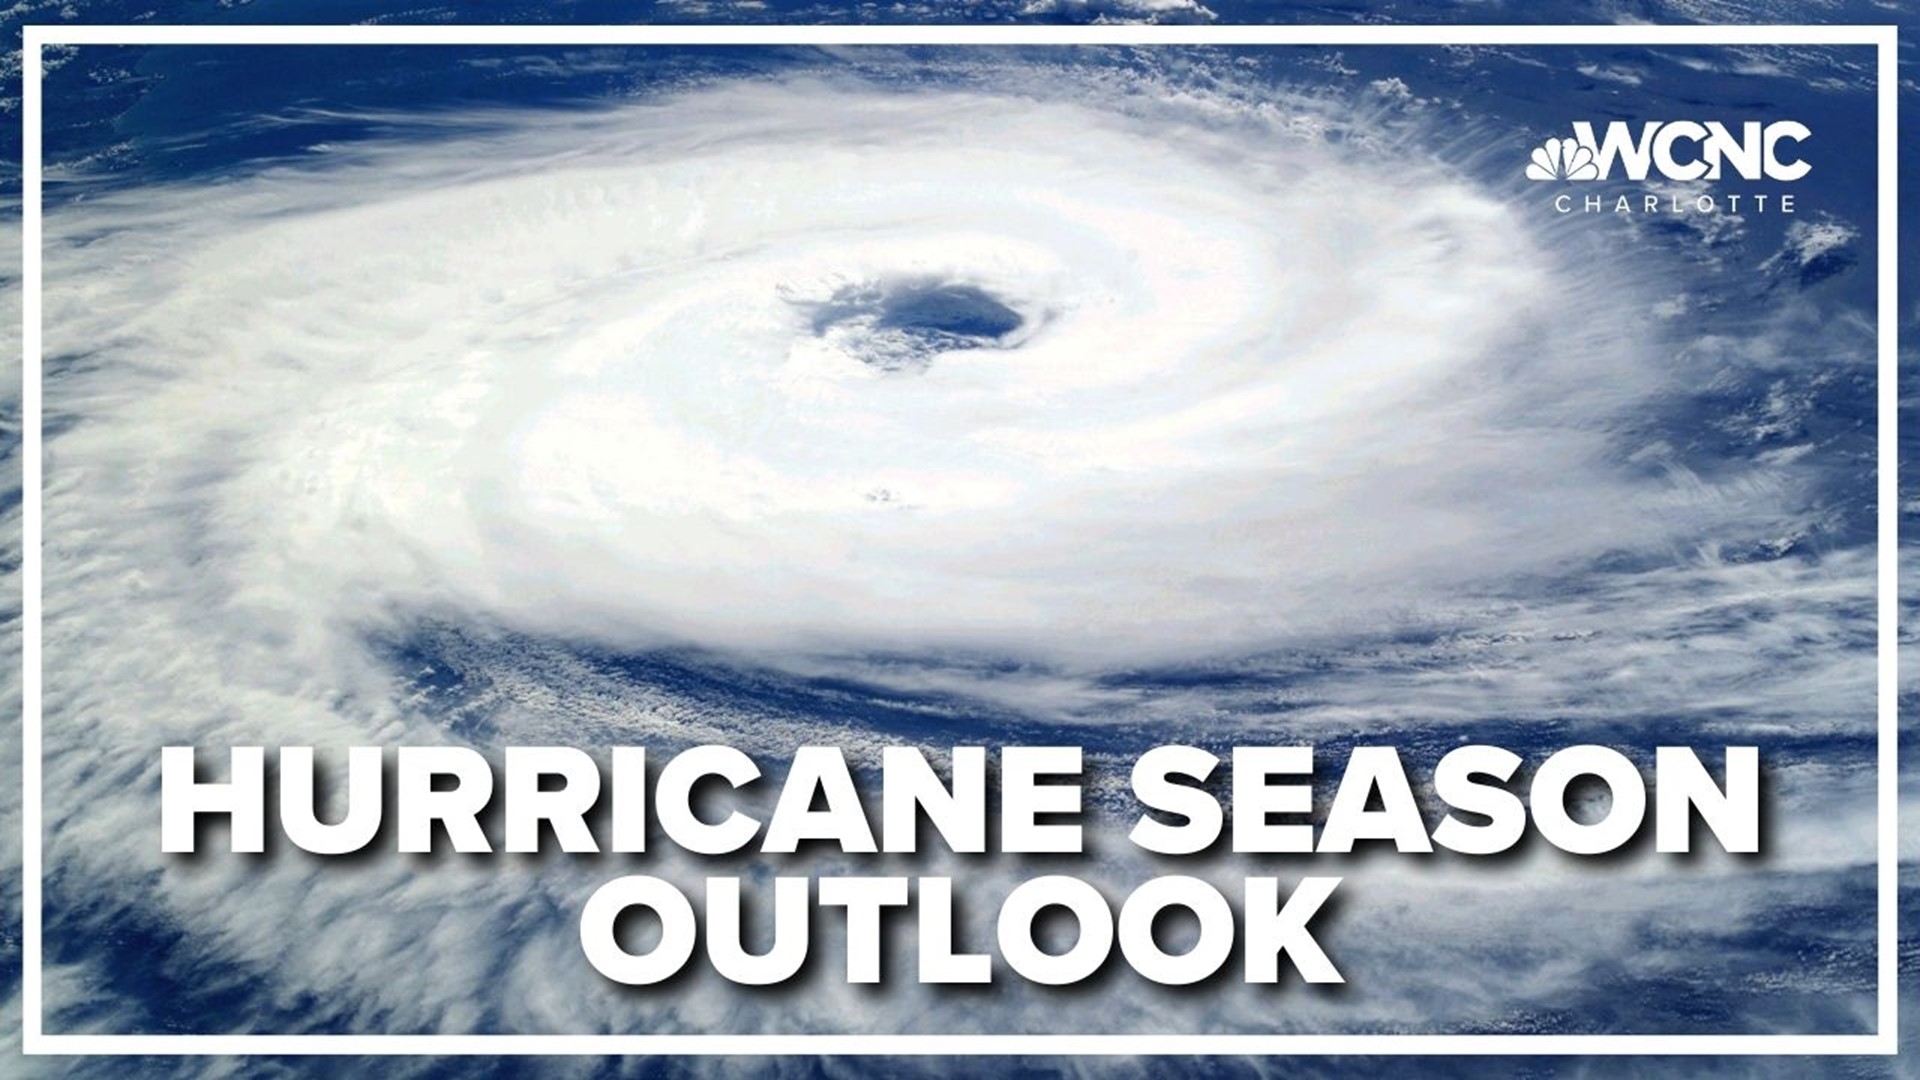 Hurricane season officially begins on June 1.